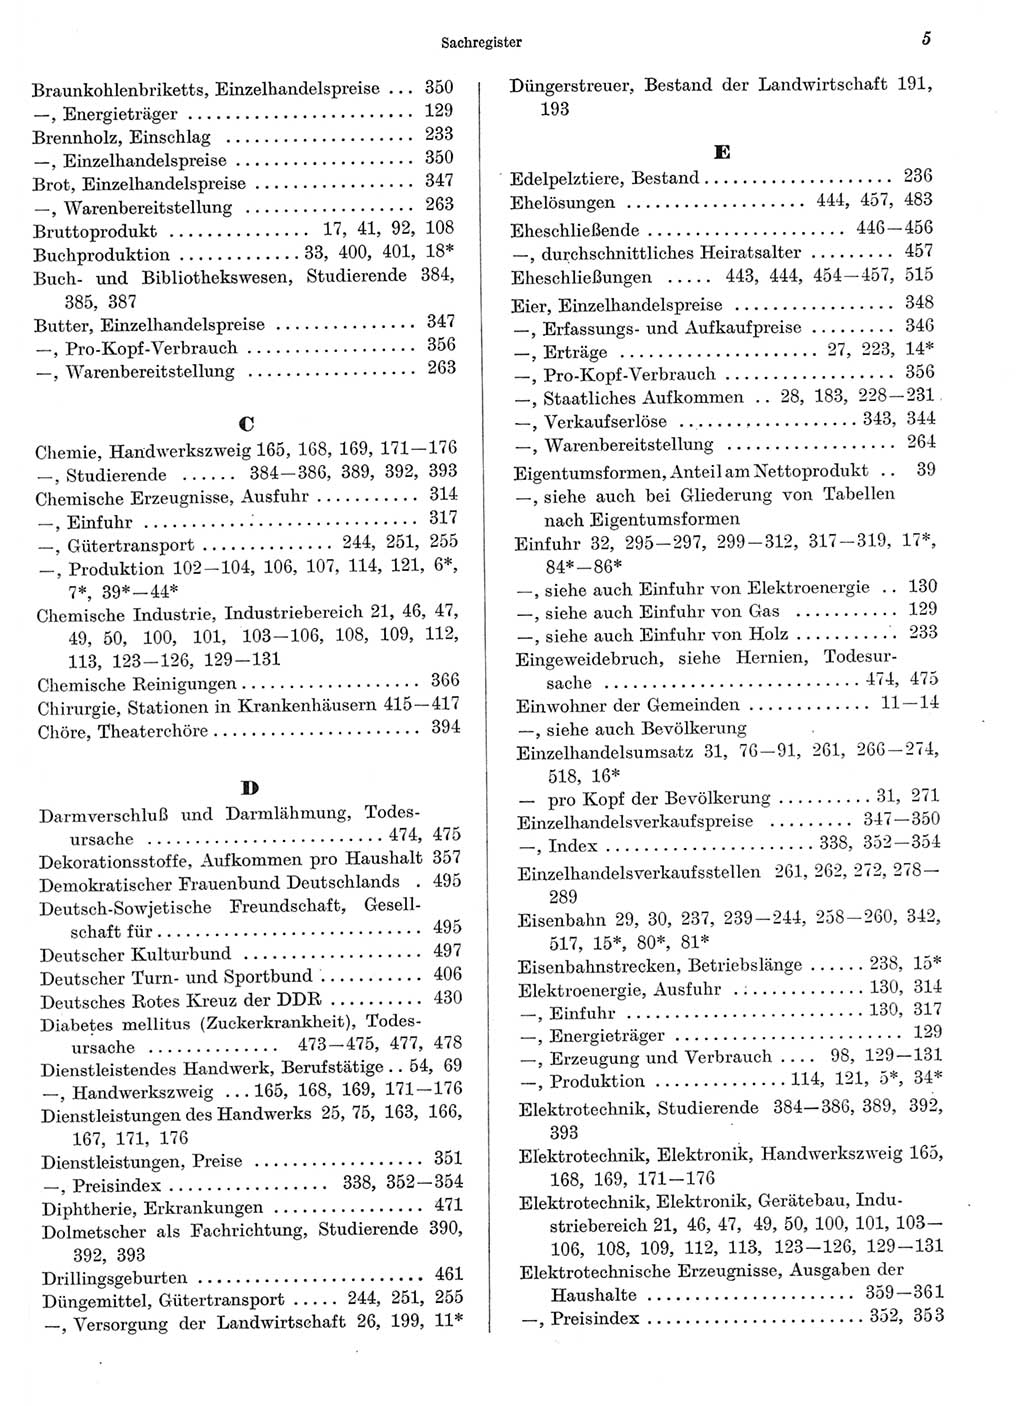 Statistisches Jahrbuch der Deutschen Demokratischen Republik (DDR) 1969, Seite 5 (Stat. Jb. DDR 1969, S. 5)